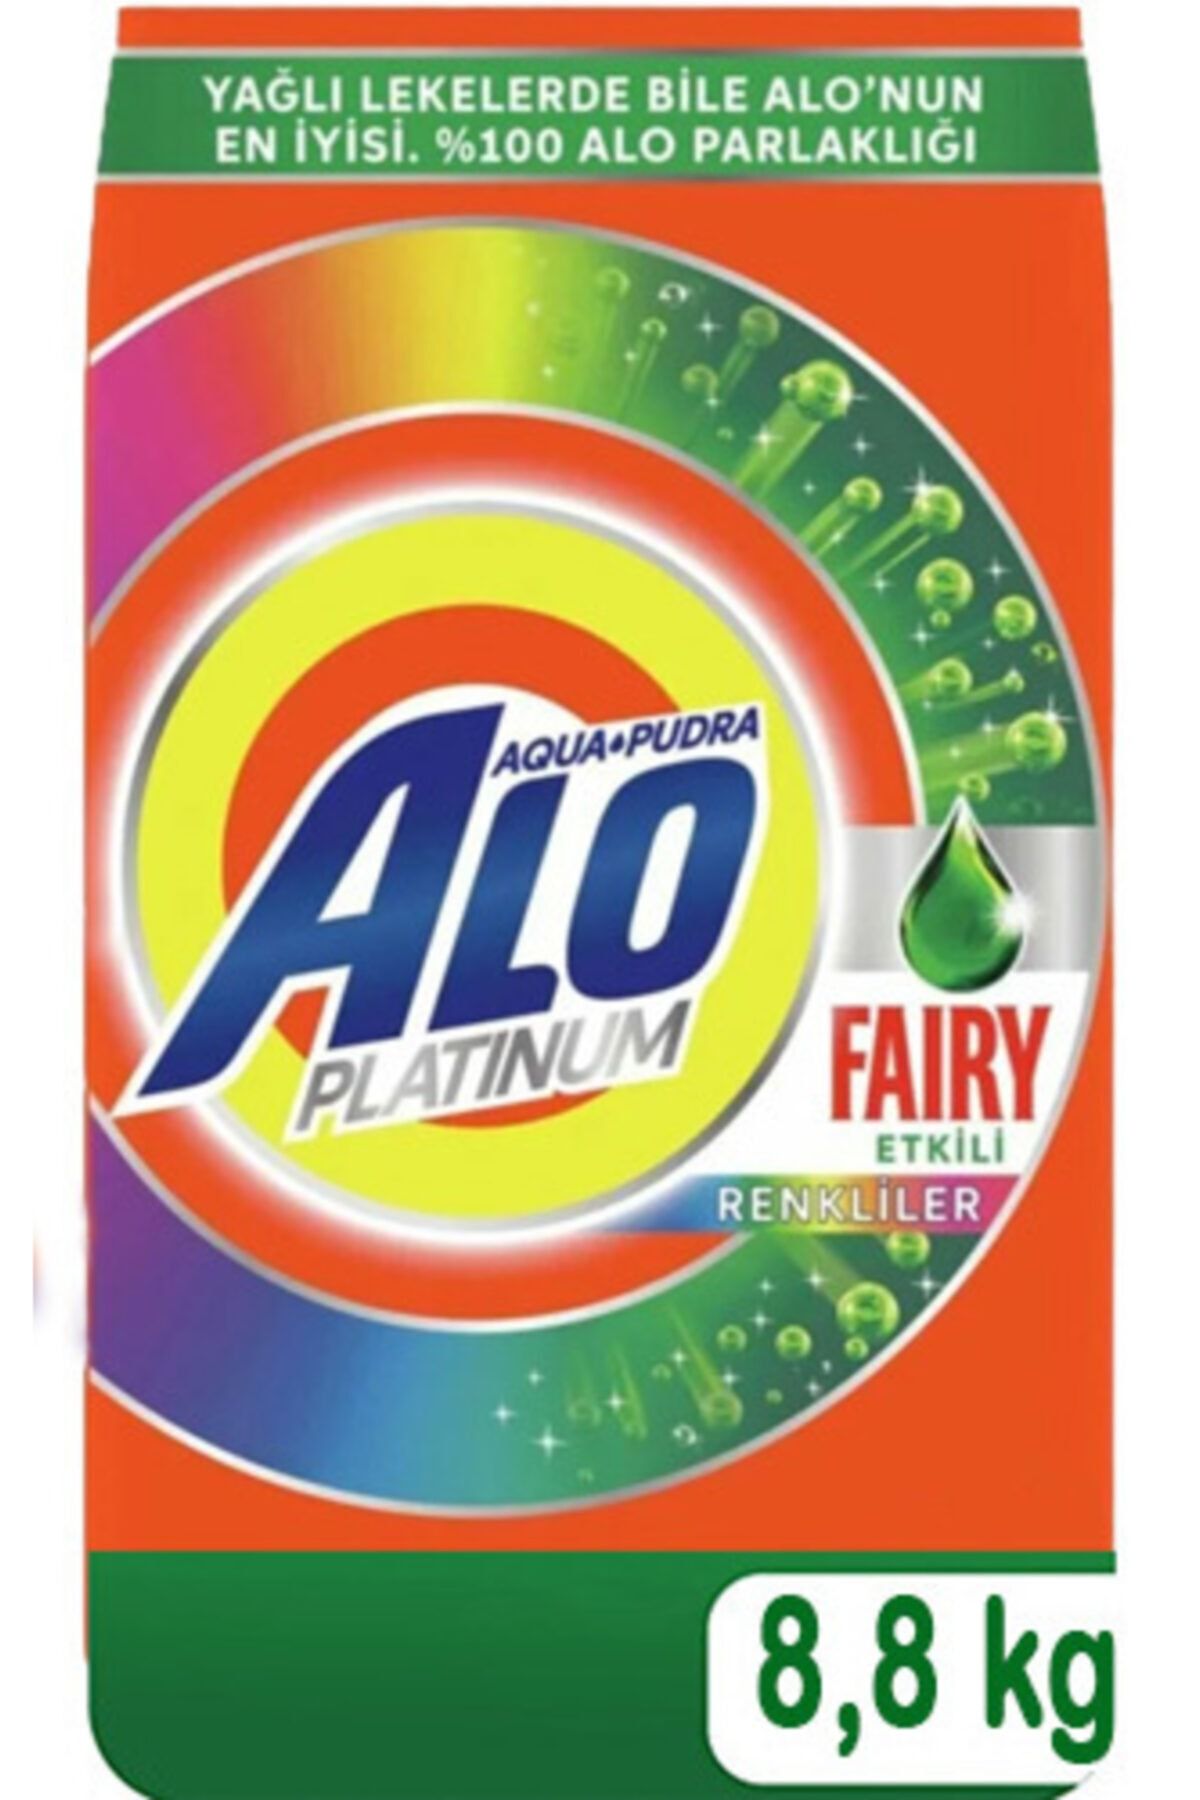 Alo Platinum Toz Çamaşır Deterjanı Fairy Etkili Renkliler Için 8,8 kg